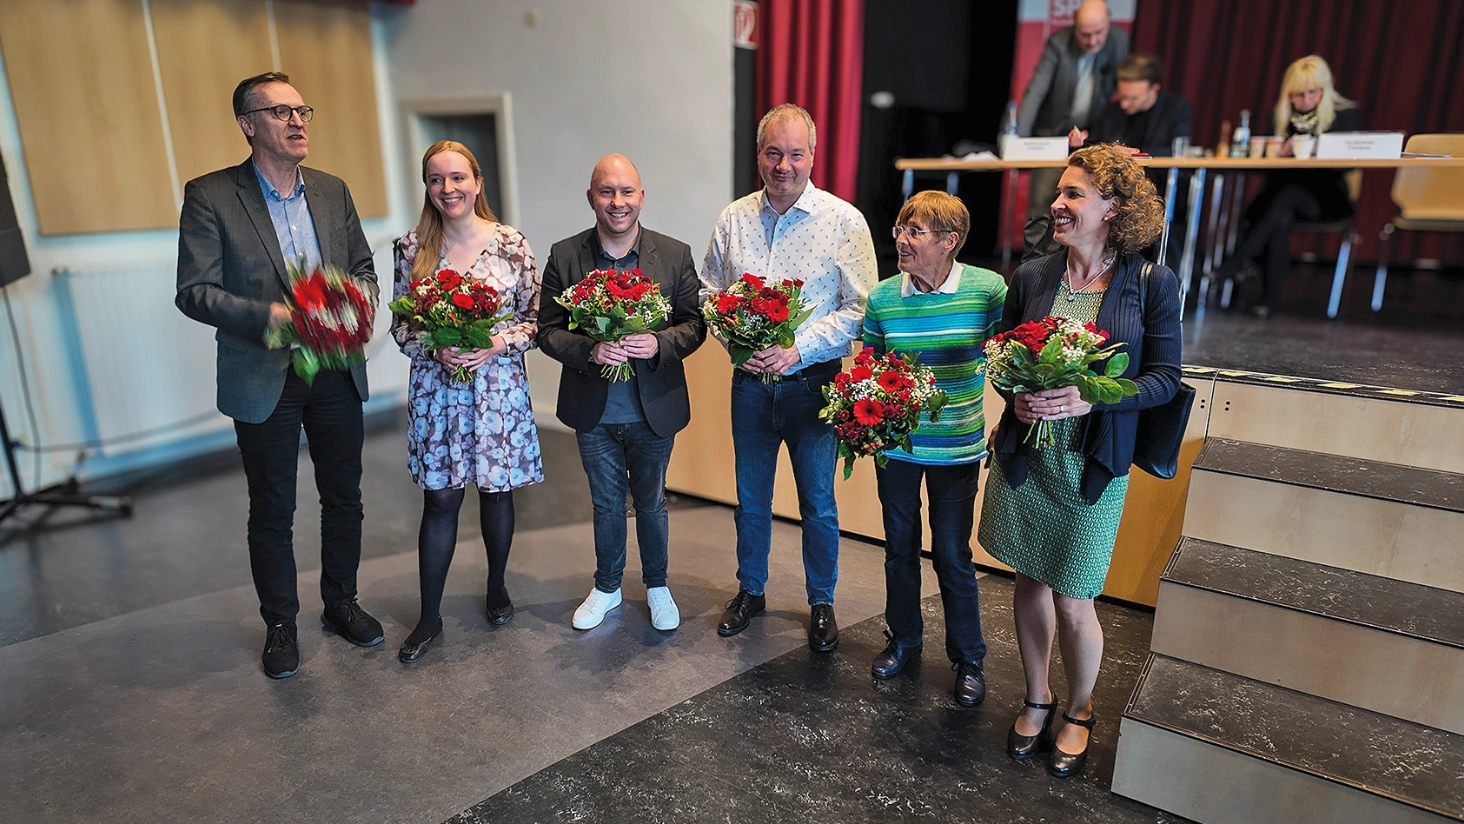 Sechs Menschen mit Blumensträußen vor einer Bühne